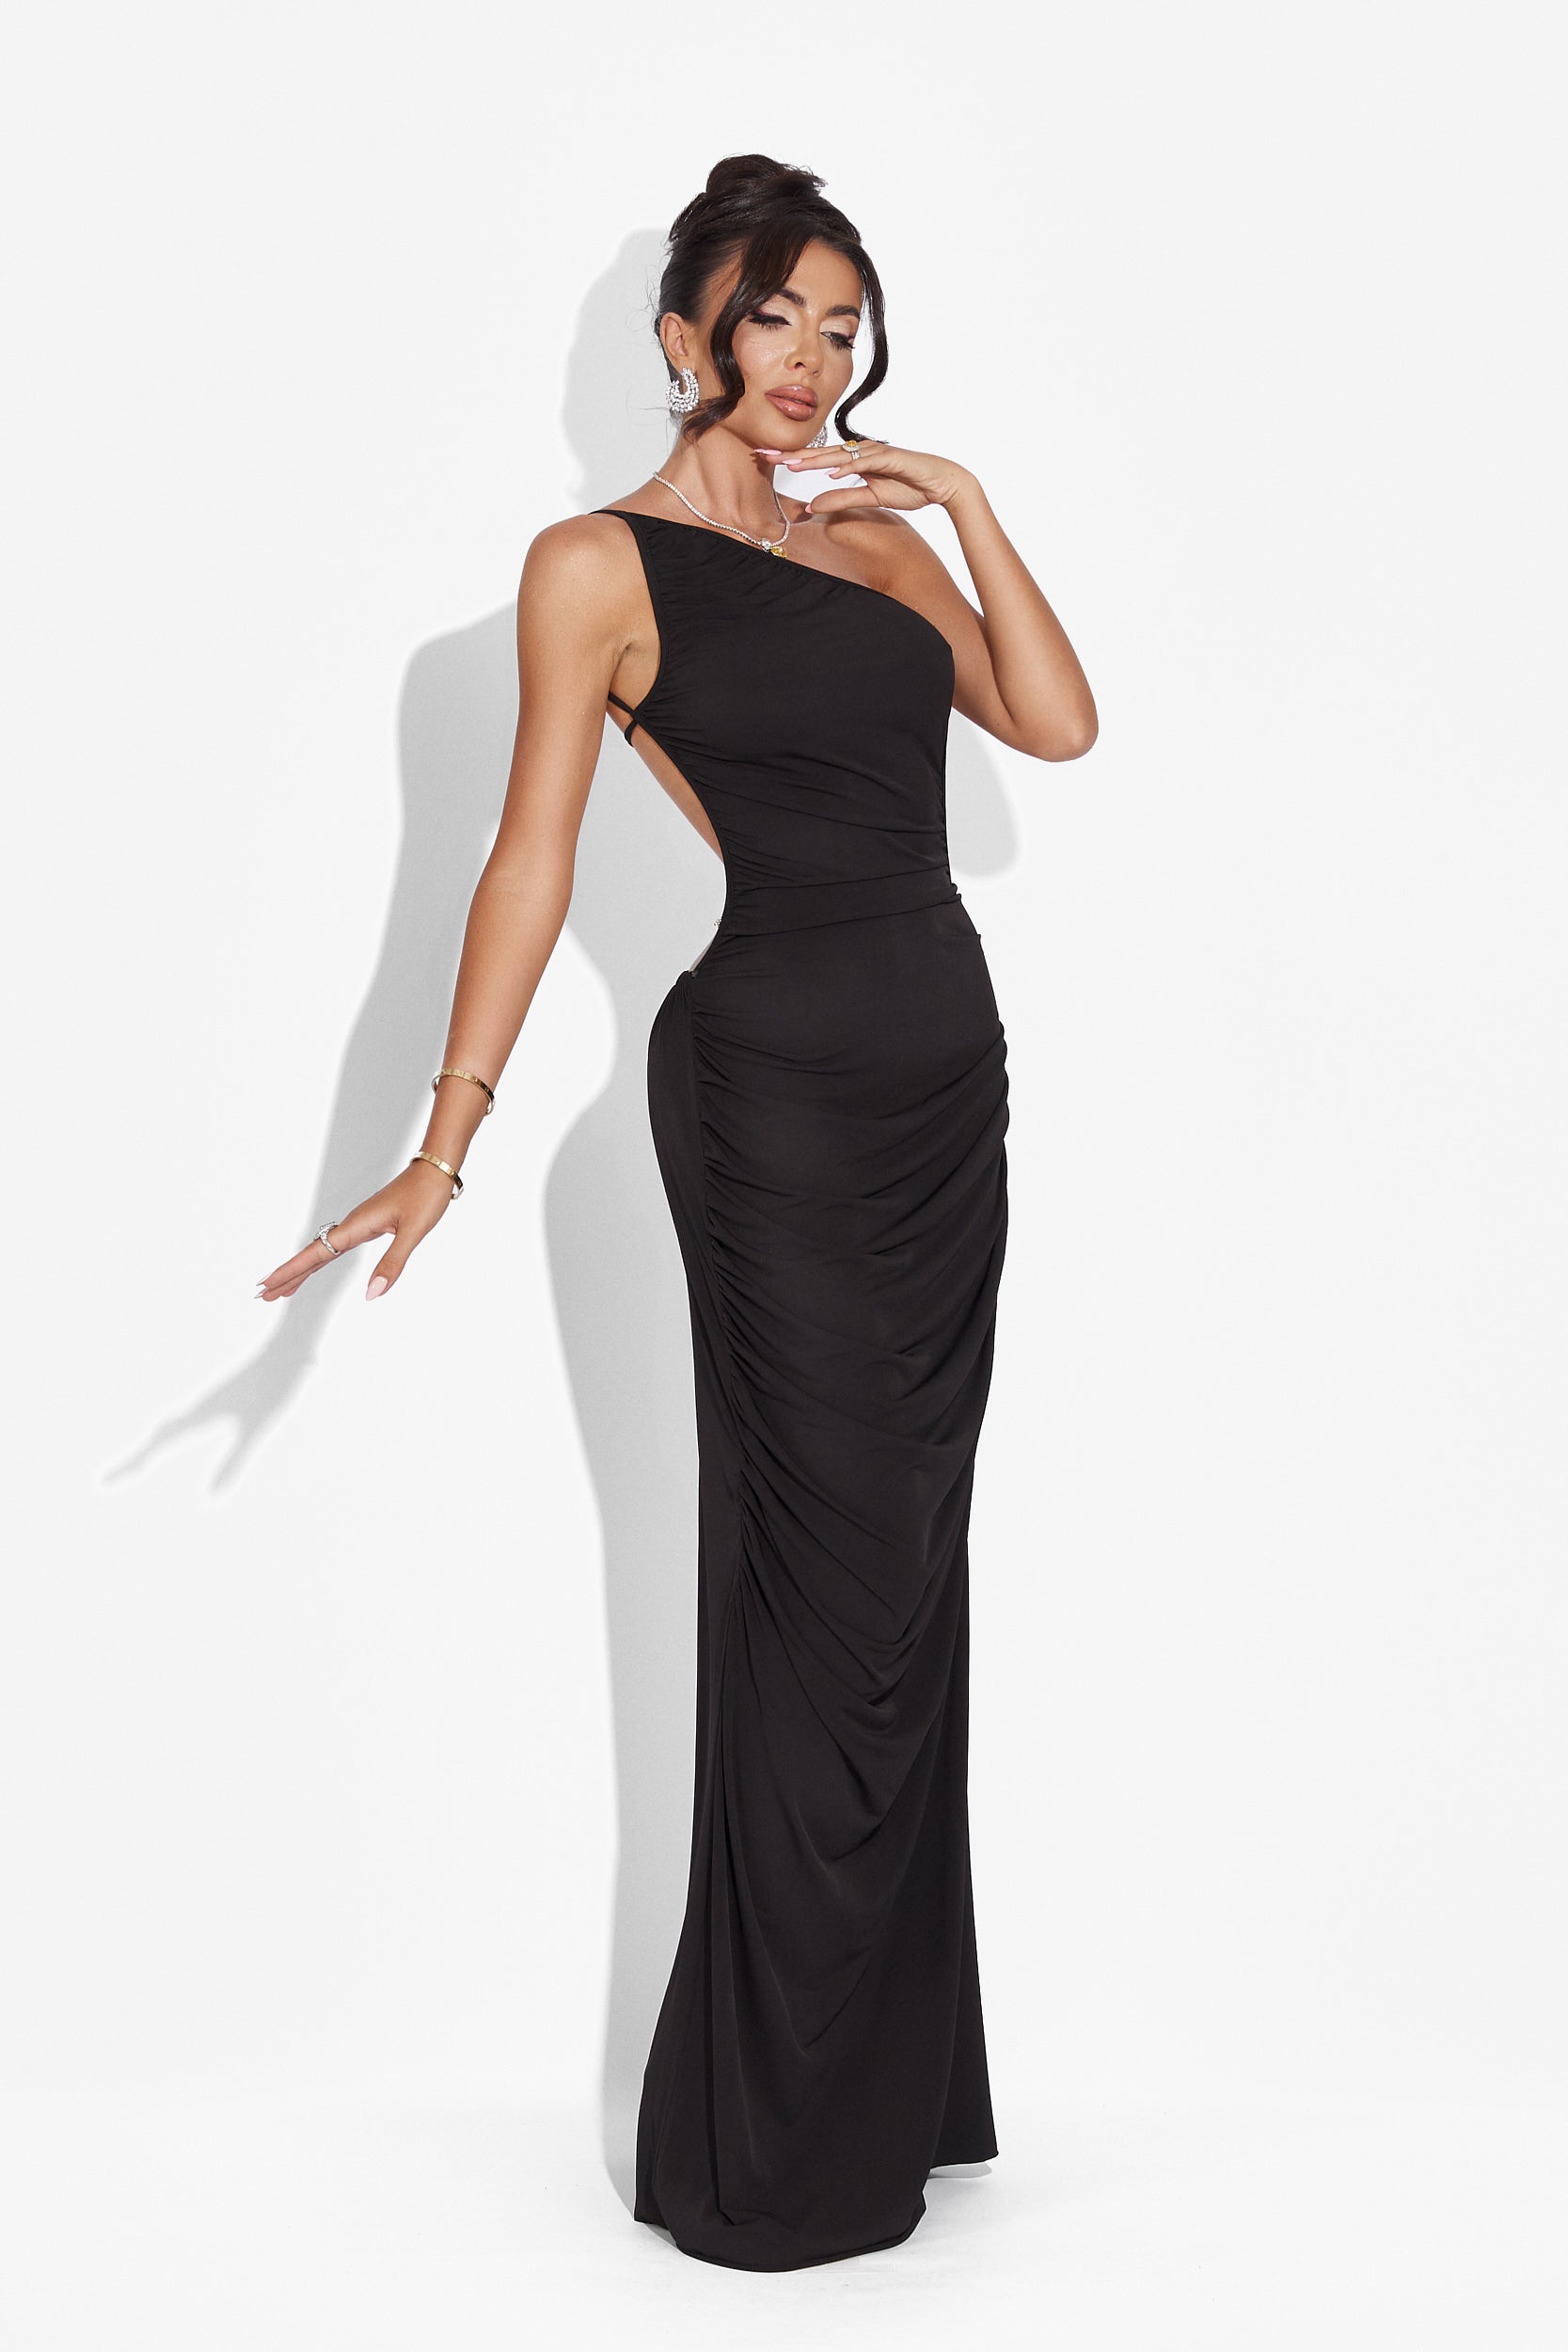 Calvia Bogas hosszú fekete női ruha